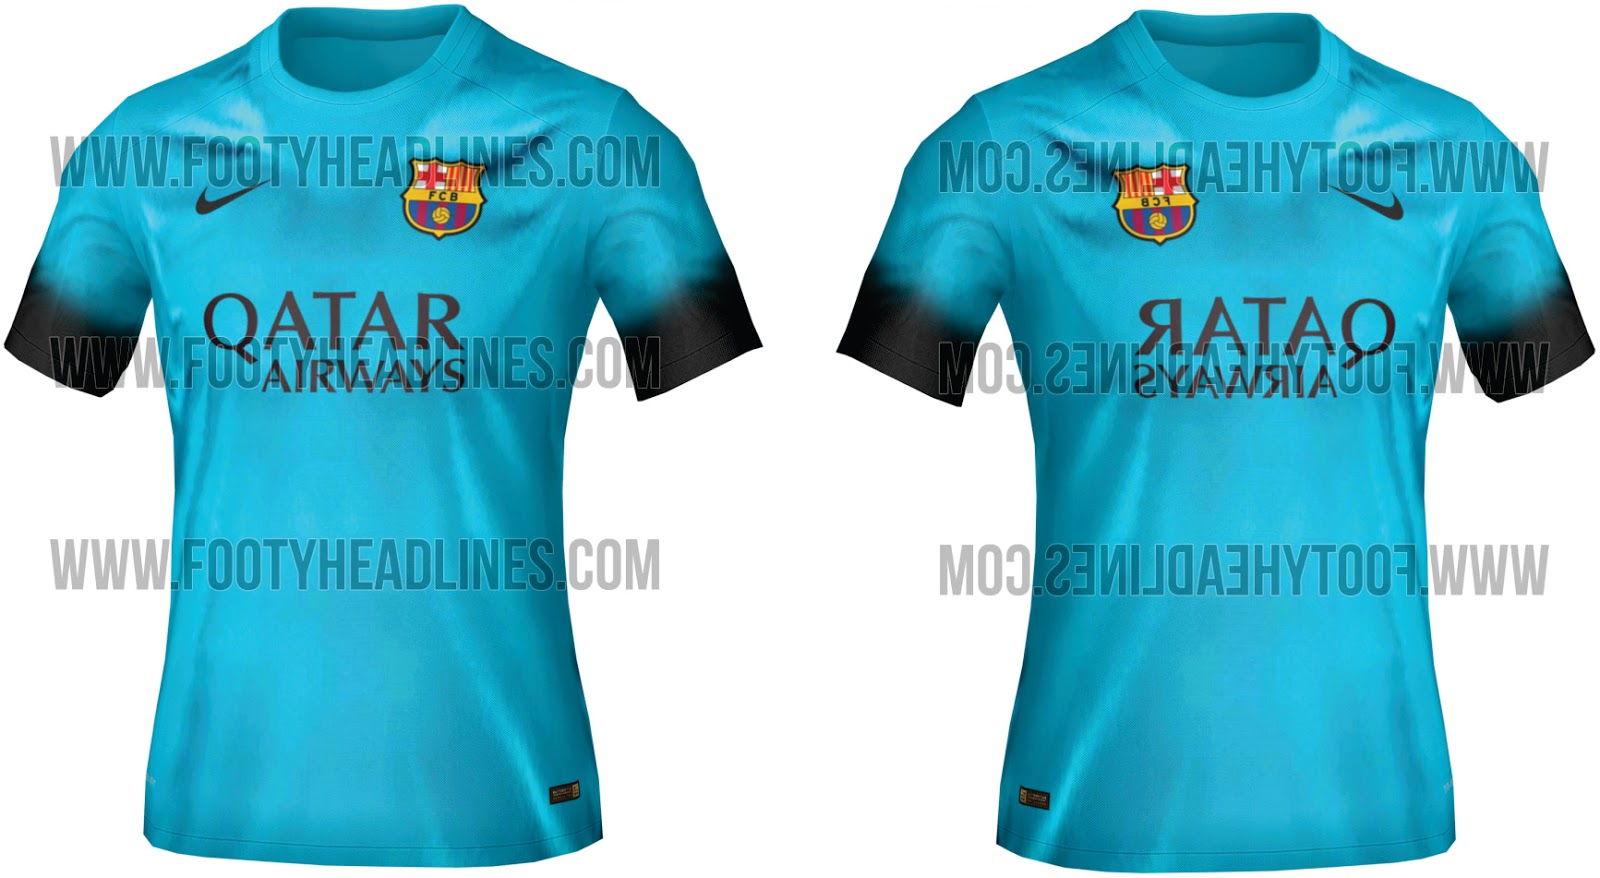  Desain  Baju  Bola Barcelona  Klopdesain